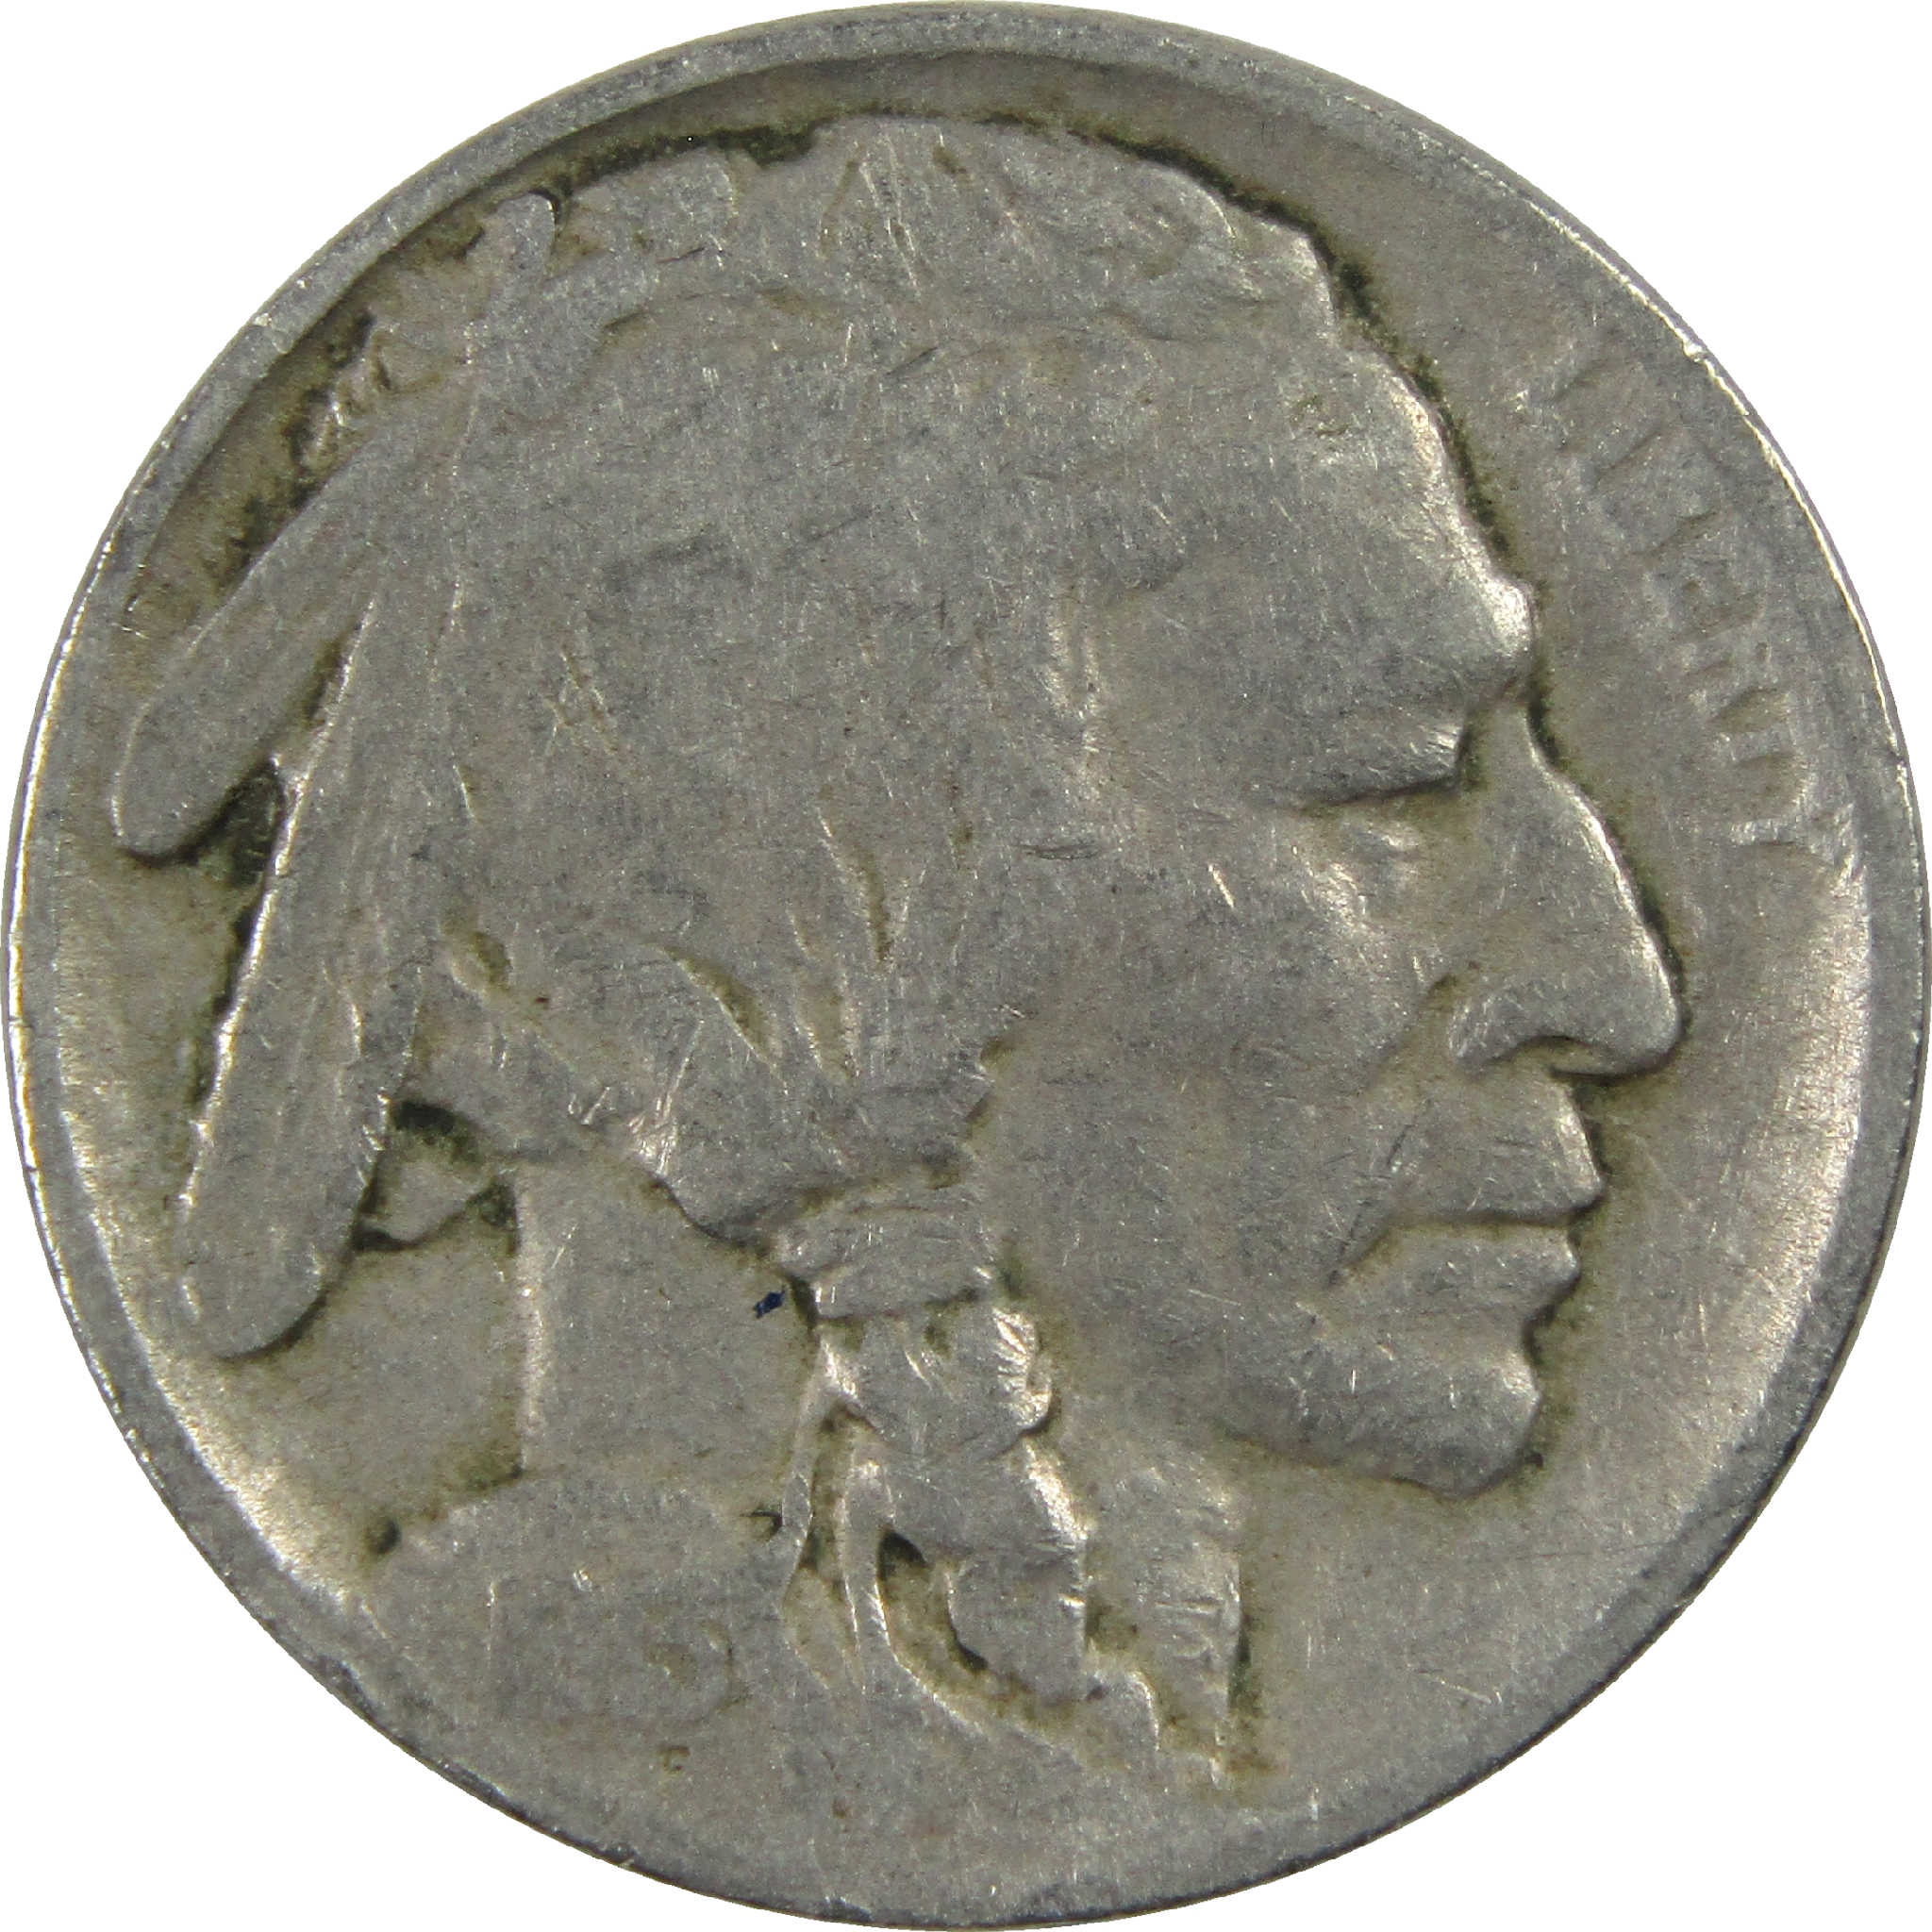 1913 Type 1 Indian Head Buffalo Nickel VG Very Good 5c Coin SKU:I12602